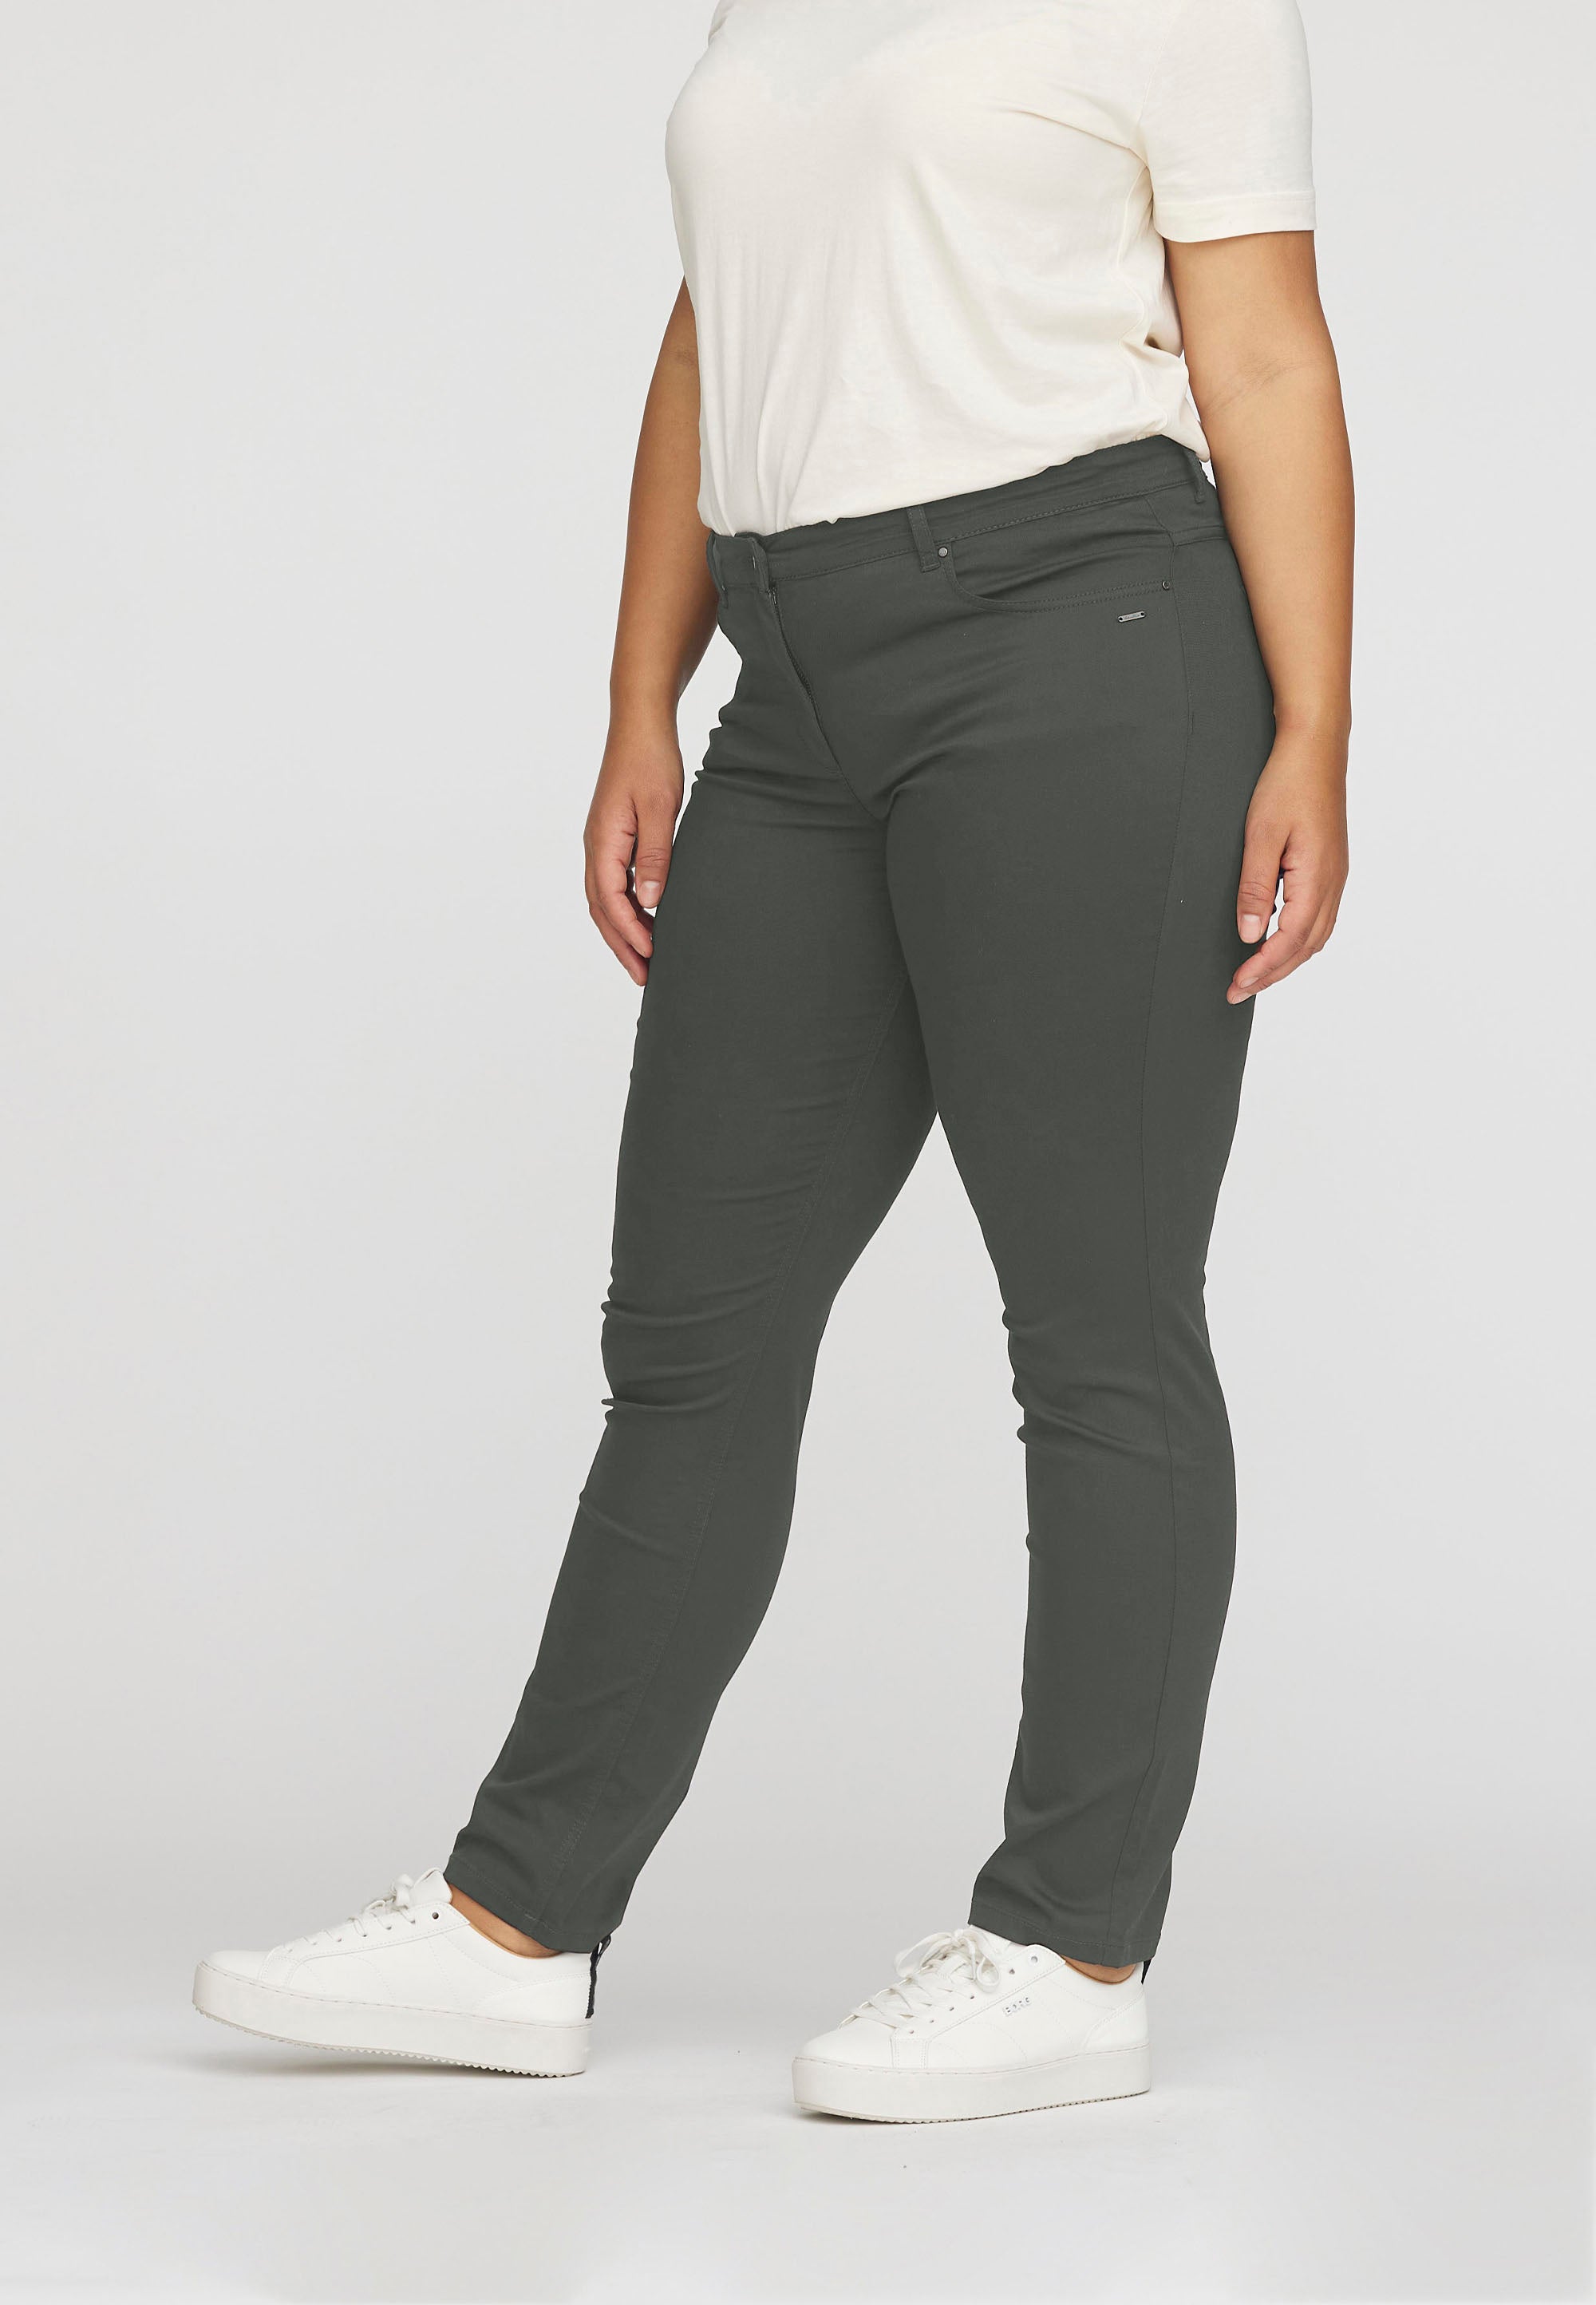 LAURIE  Charlotte Regular - Medium Length Trousers REGULAR Dunkler schatten